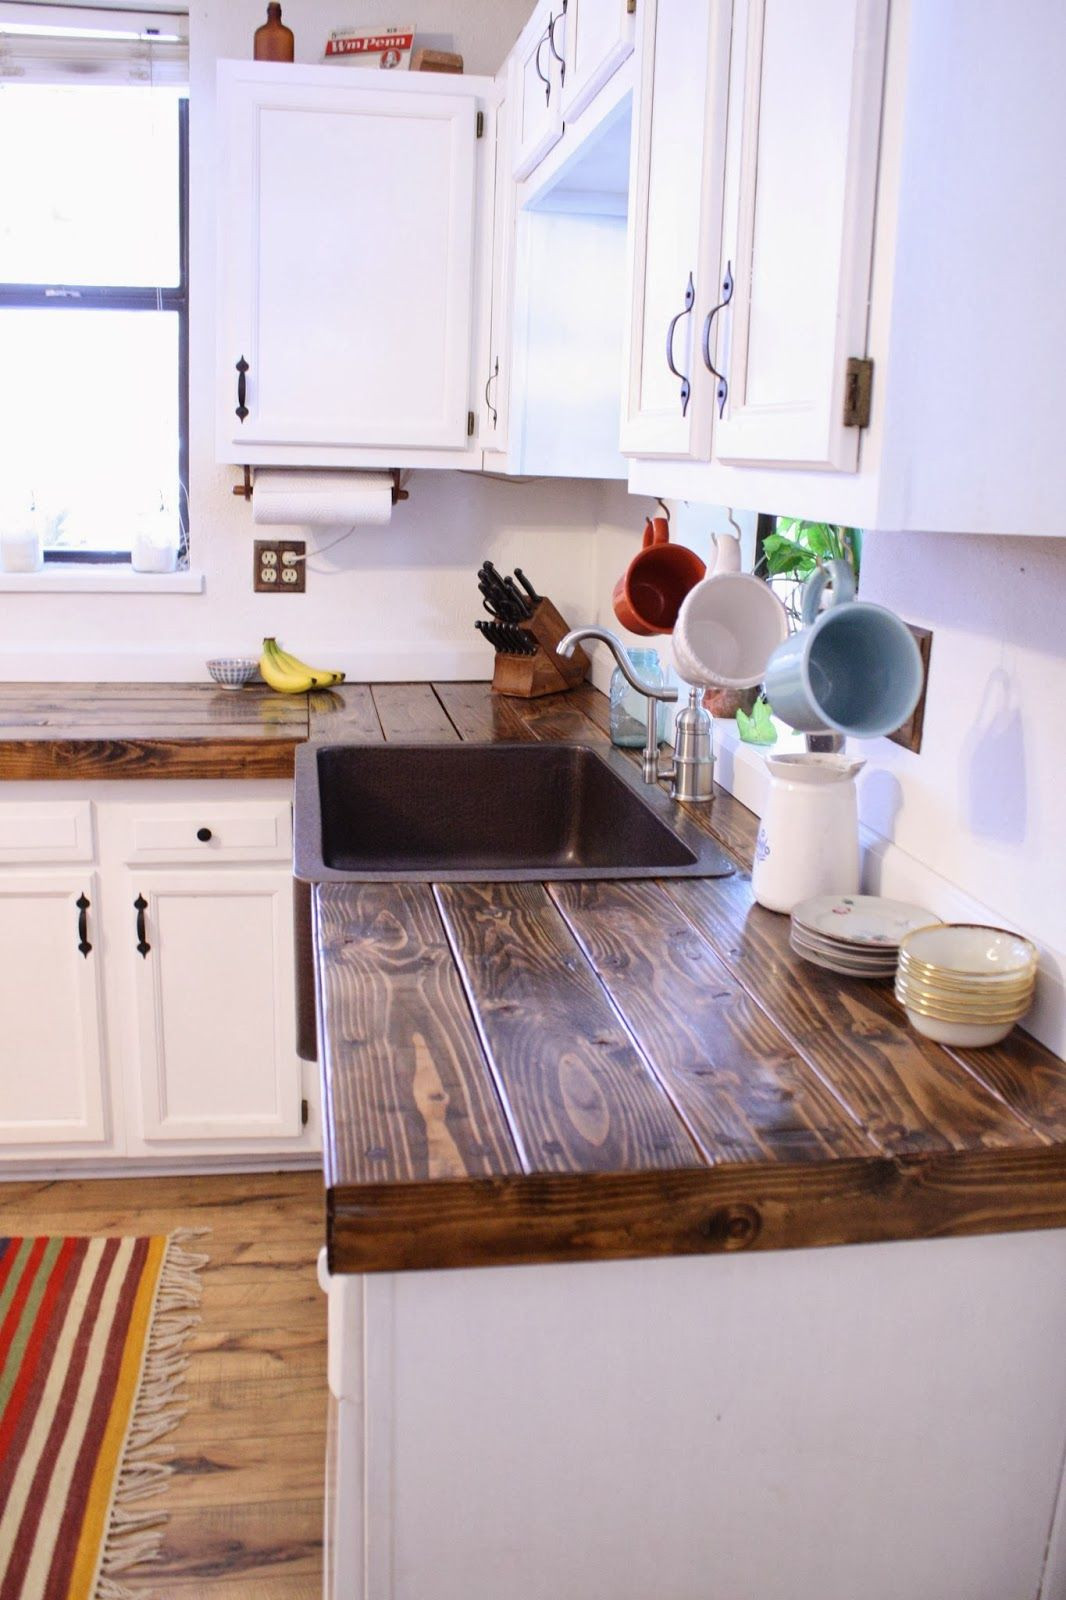 Kitchen Counters Diy
 Cheap countertop idea …